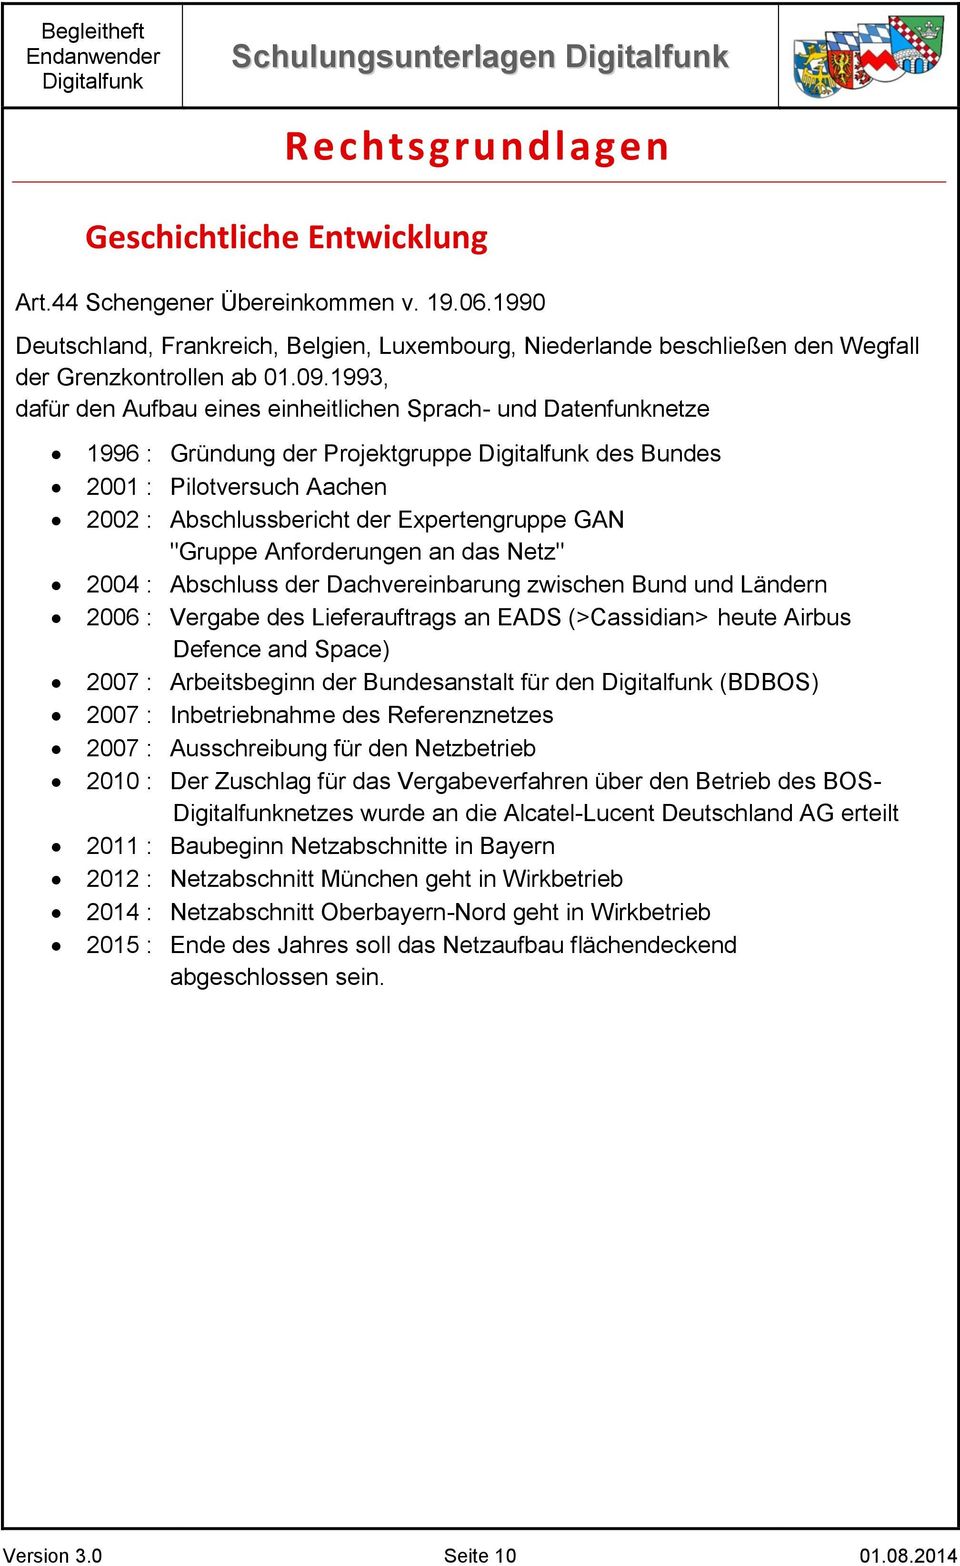 1993, dafür den Aufbau eines einheitlichen Sprach- und Datenfunknetze 1996 : Gründung der Projektgruppe des Bundes 2001 : Pilotversuch Aachen 2002 : Abschlussbericht der Expertengruppe GAN "Gruppe